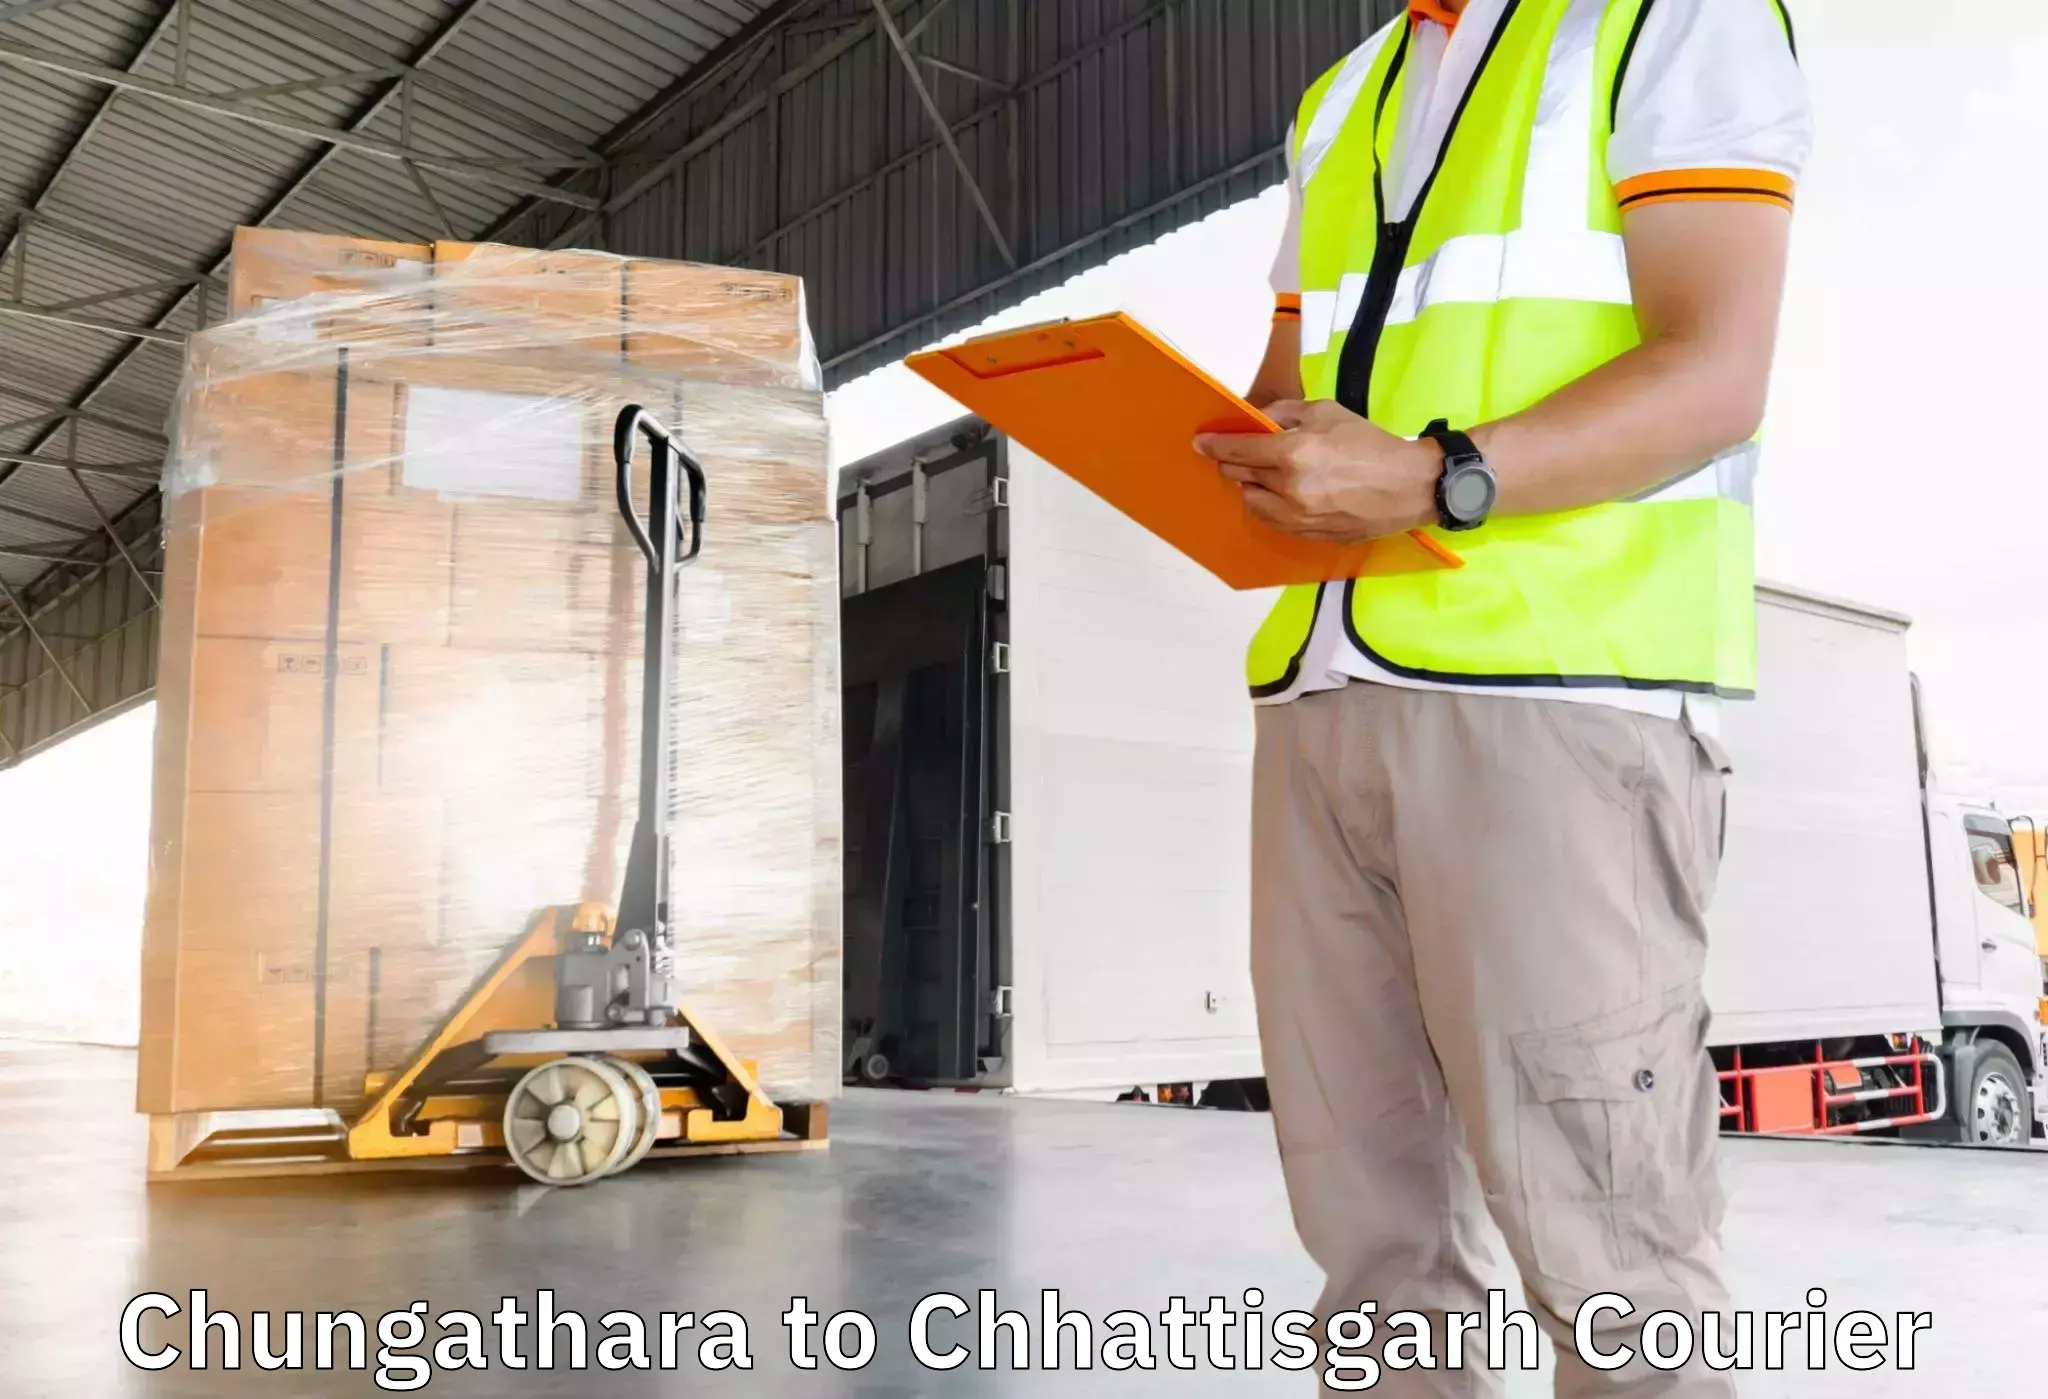 Professional moving company Chungathara to Premnagar